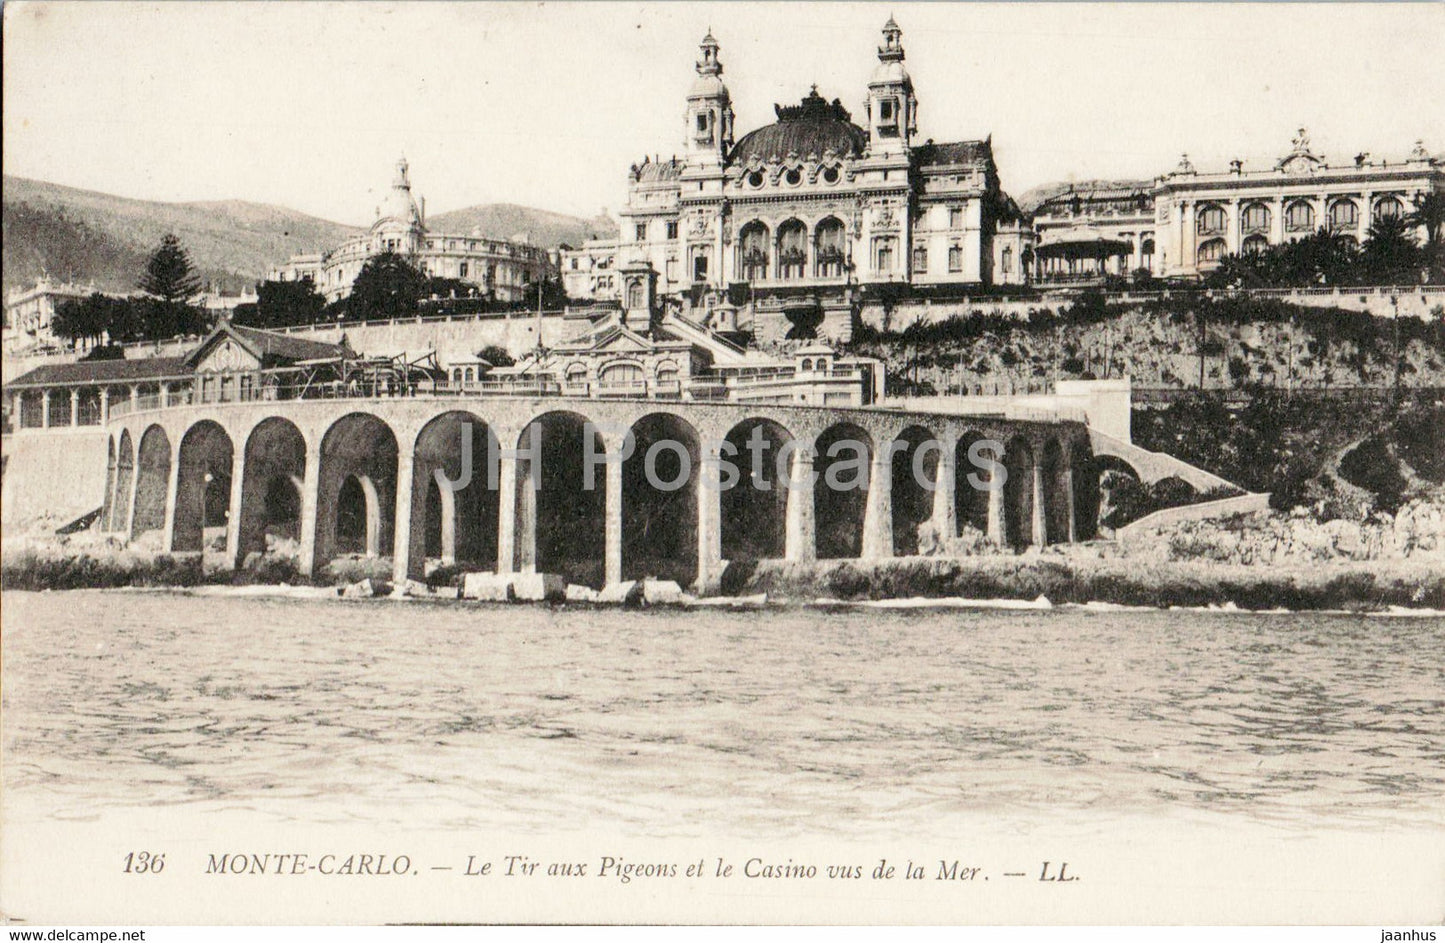 Monte Carlo - Le Tir aux Pigeons et le Casino vus de la Mer - 136 - old postcard - Monaco - unused - JH Postcards